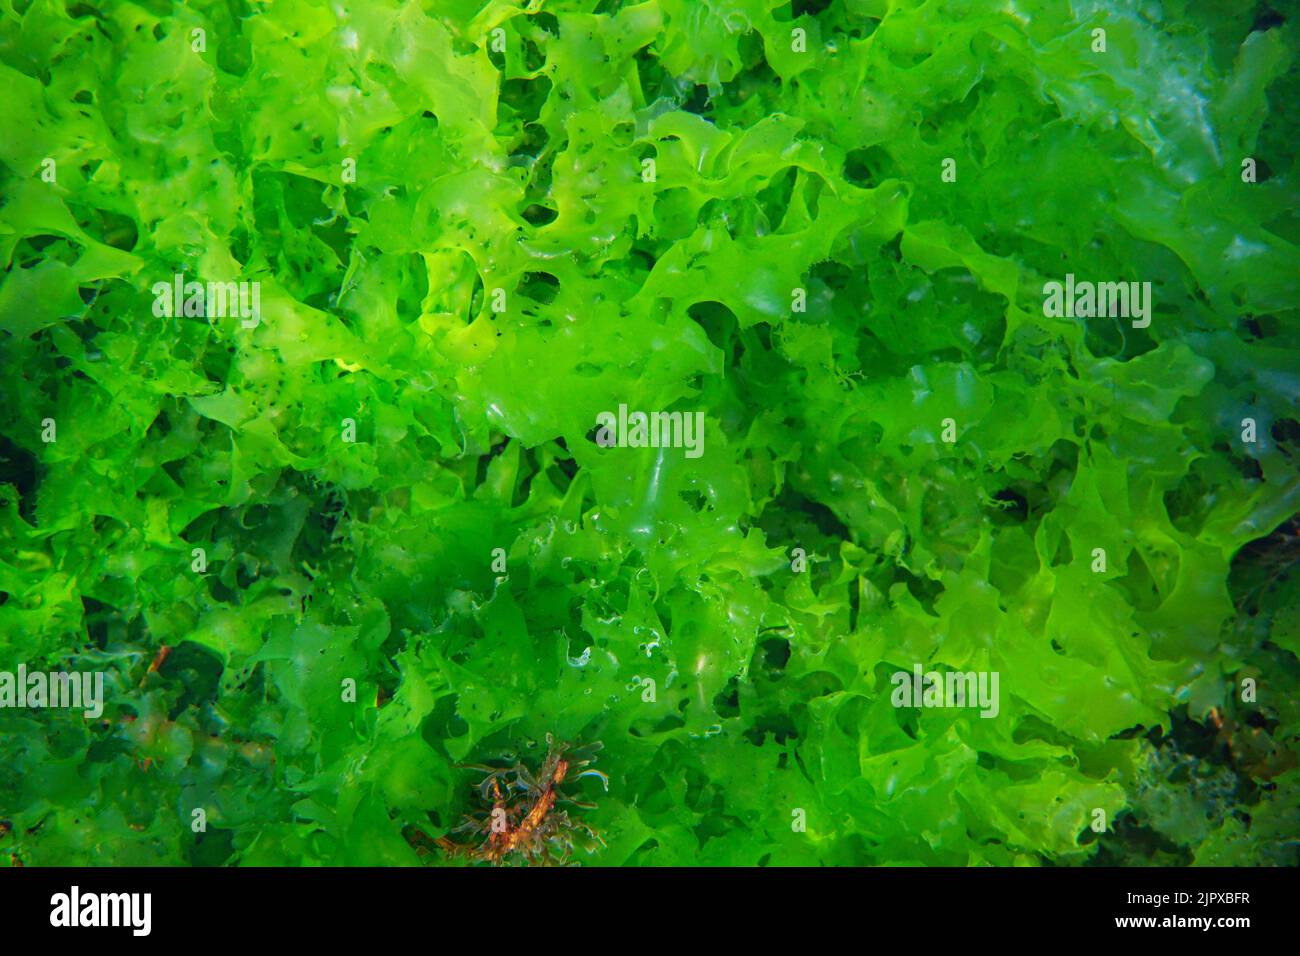 Lattuga marina Ulva lattecca alghe verdi commestibili, sott'acqua nell'oceano Atlantico, Spagna Foto Stock